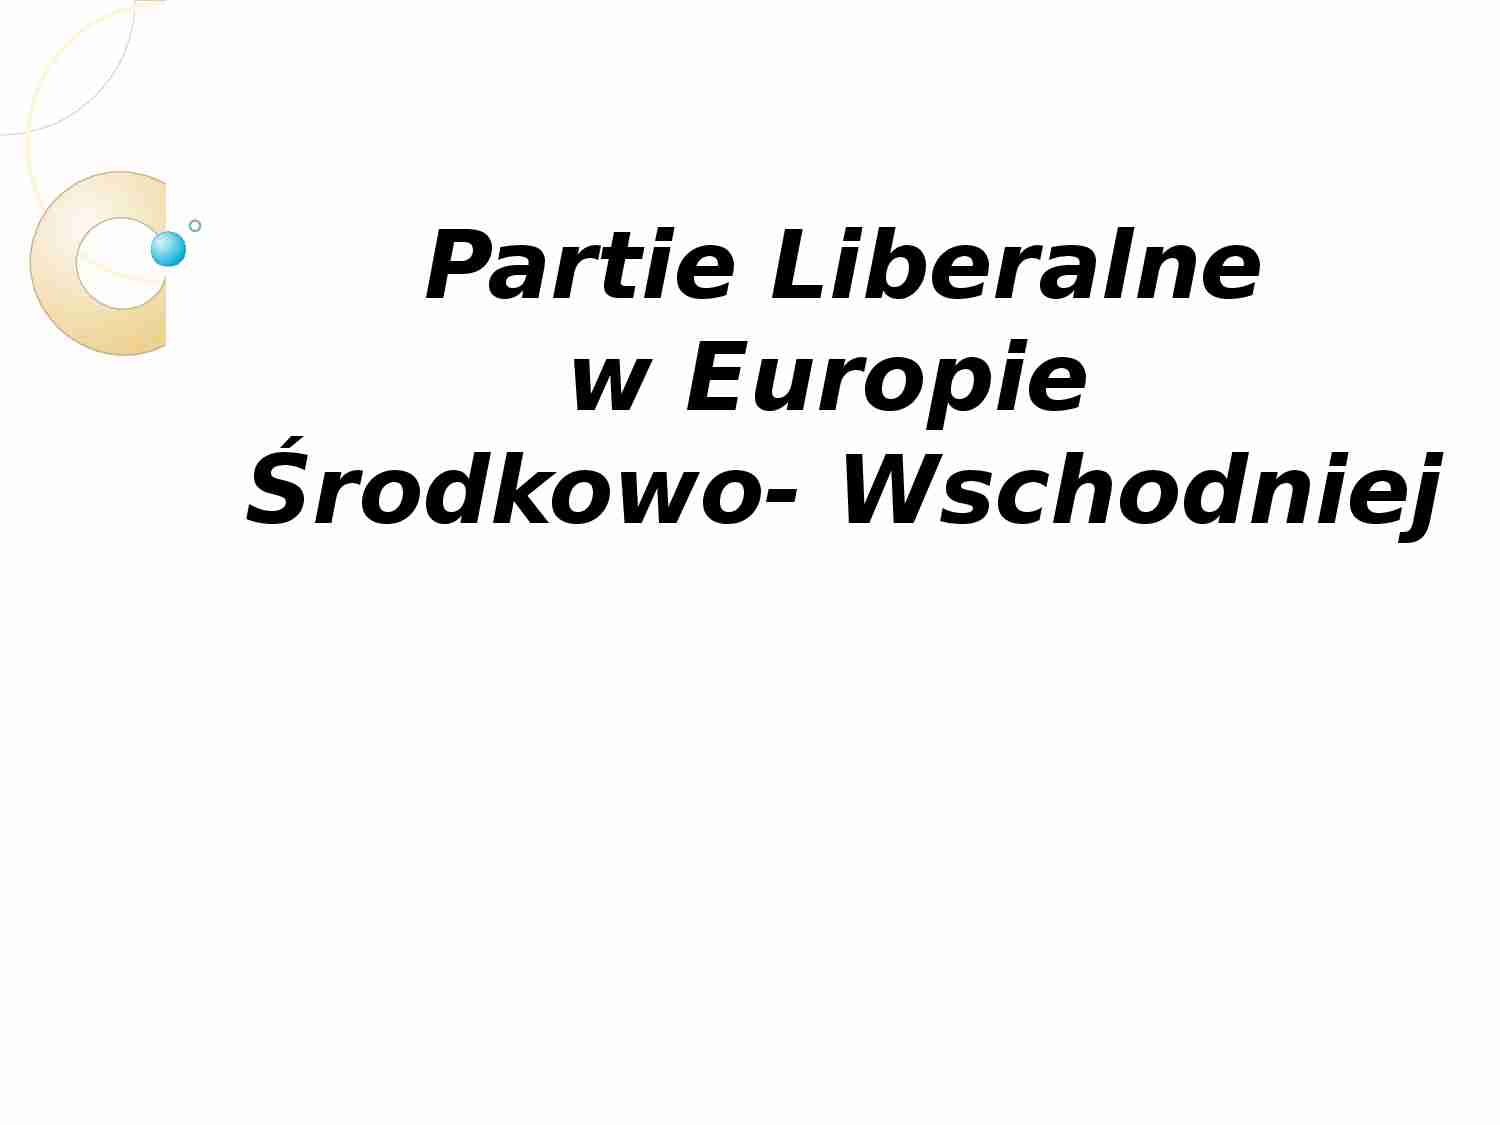 Partie Liberalne w Europie Środkowo-Wschodniej-prezentacja - strona 1